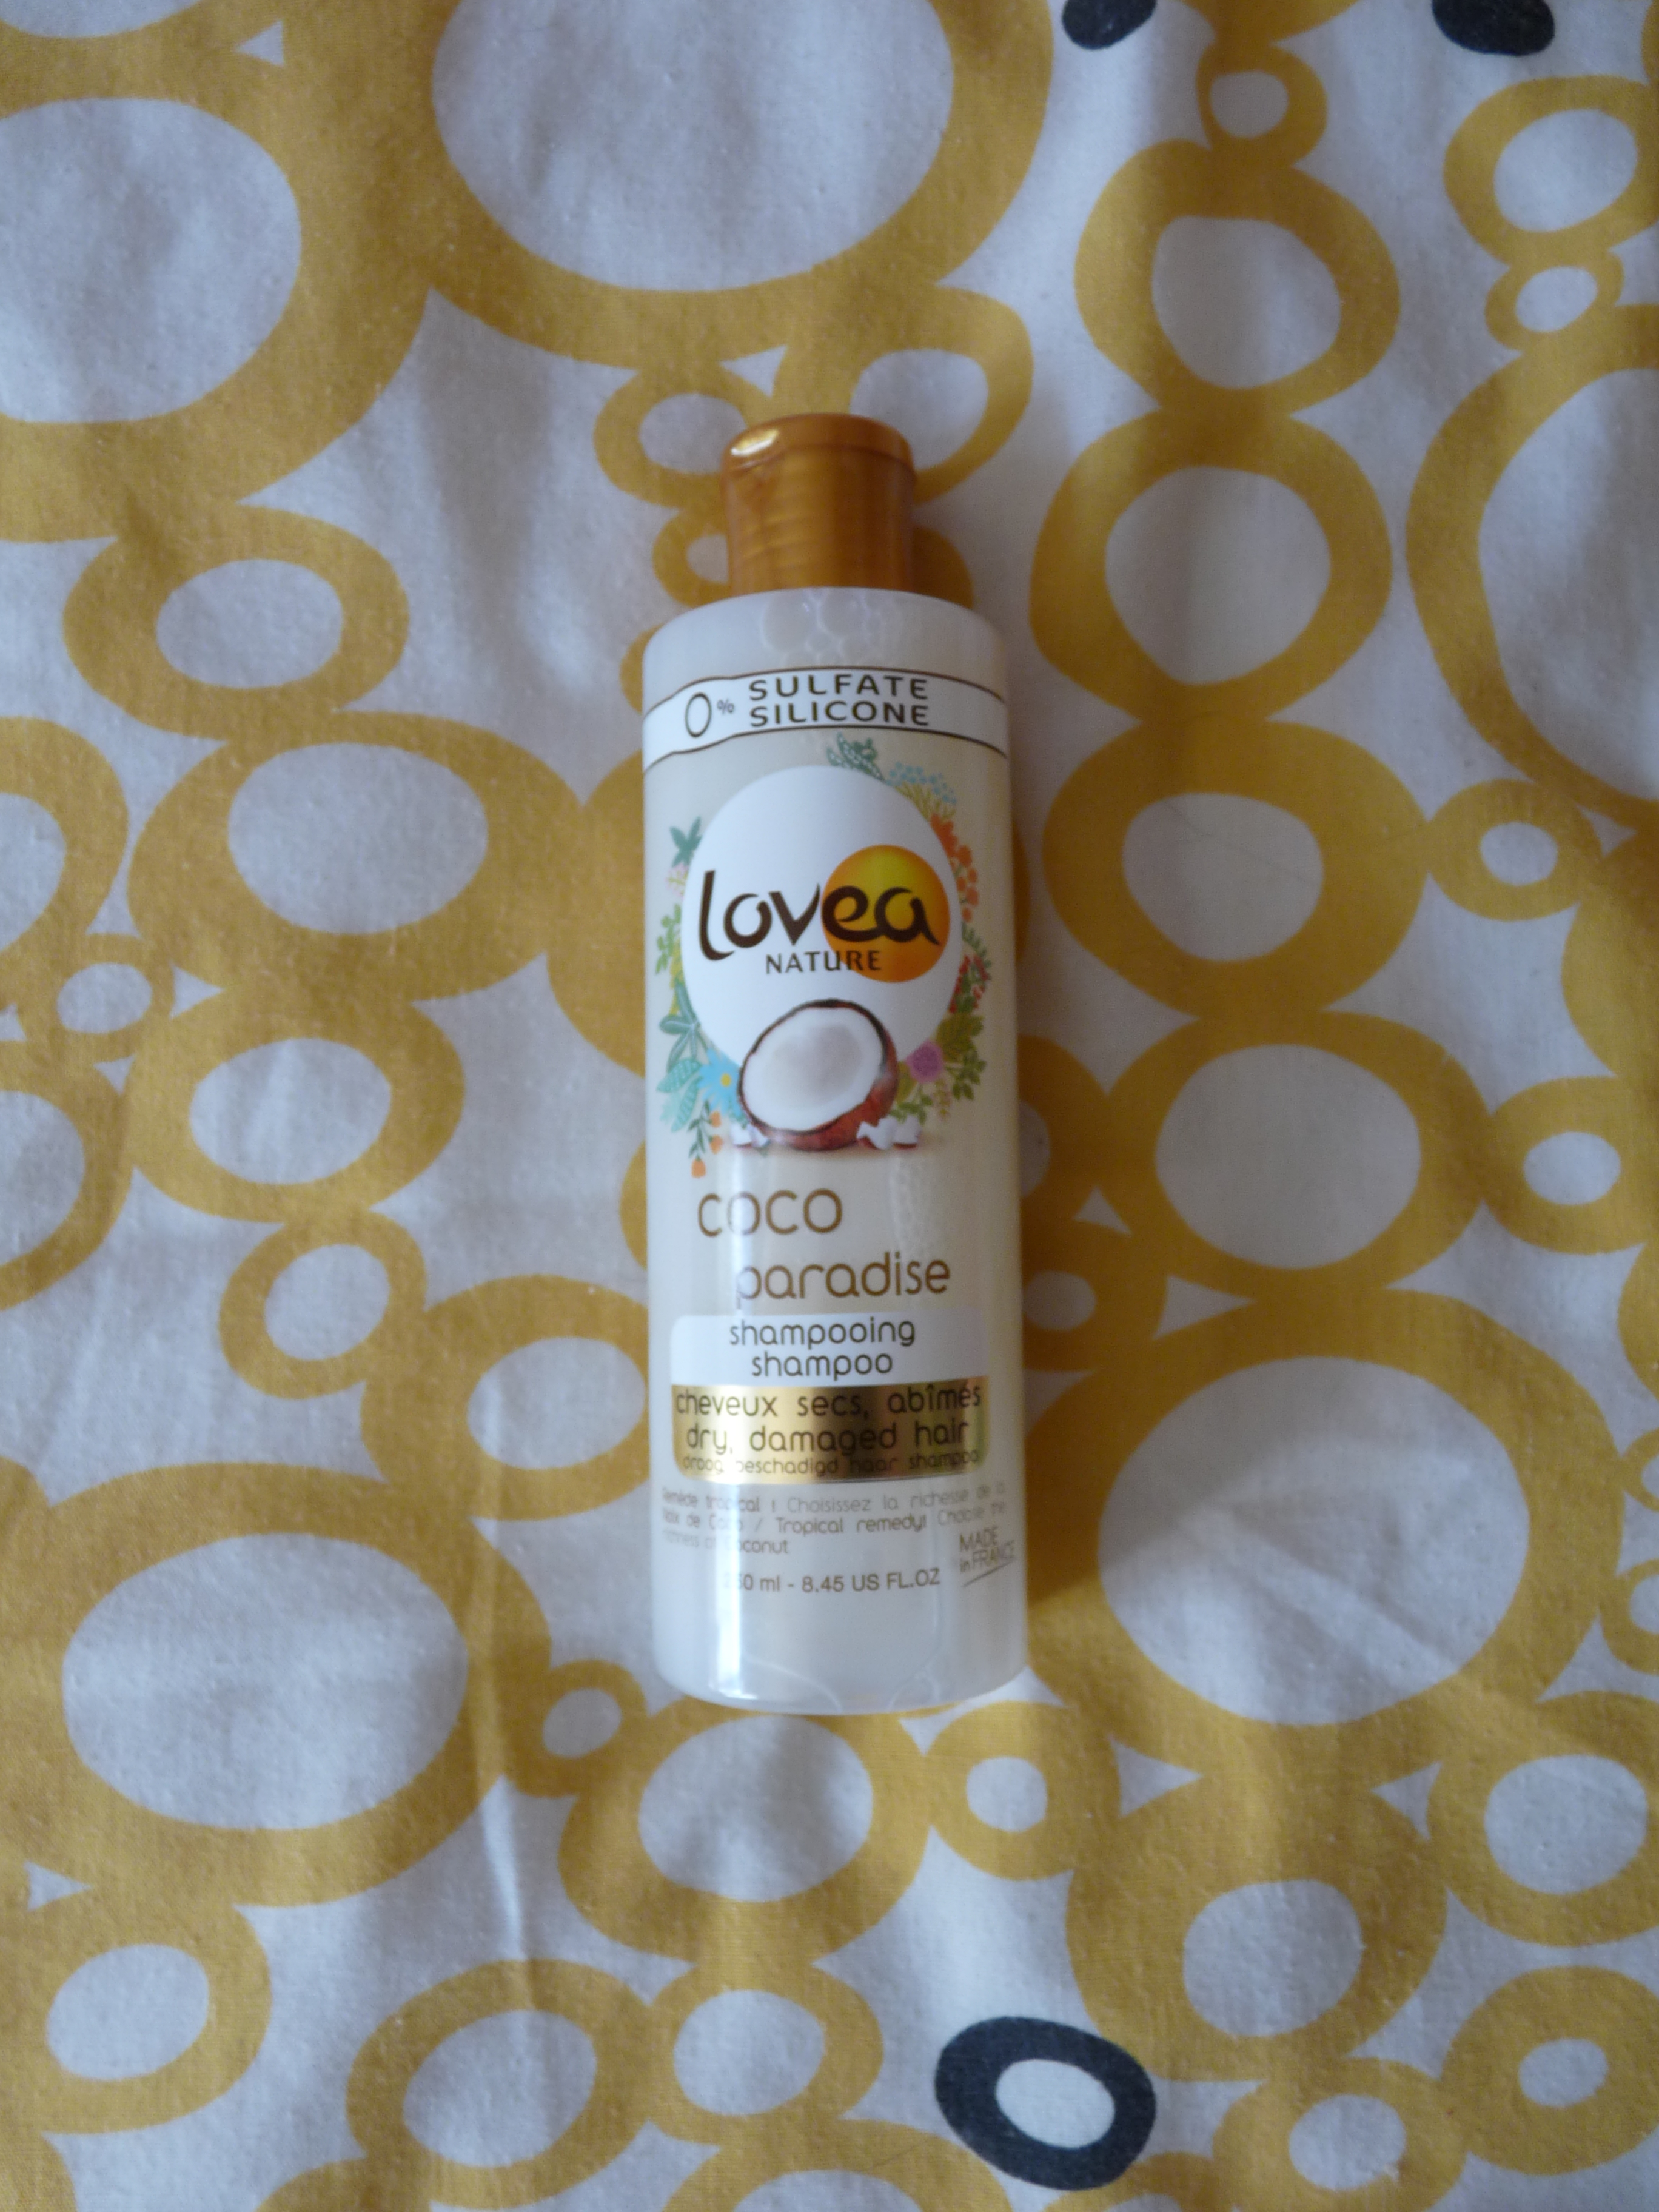 Lovea nature : j'ai testé le shampoing coco paradise pour cheveux